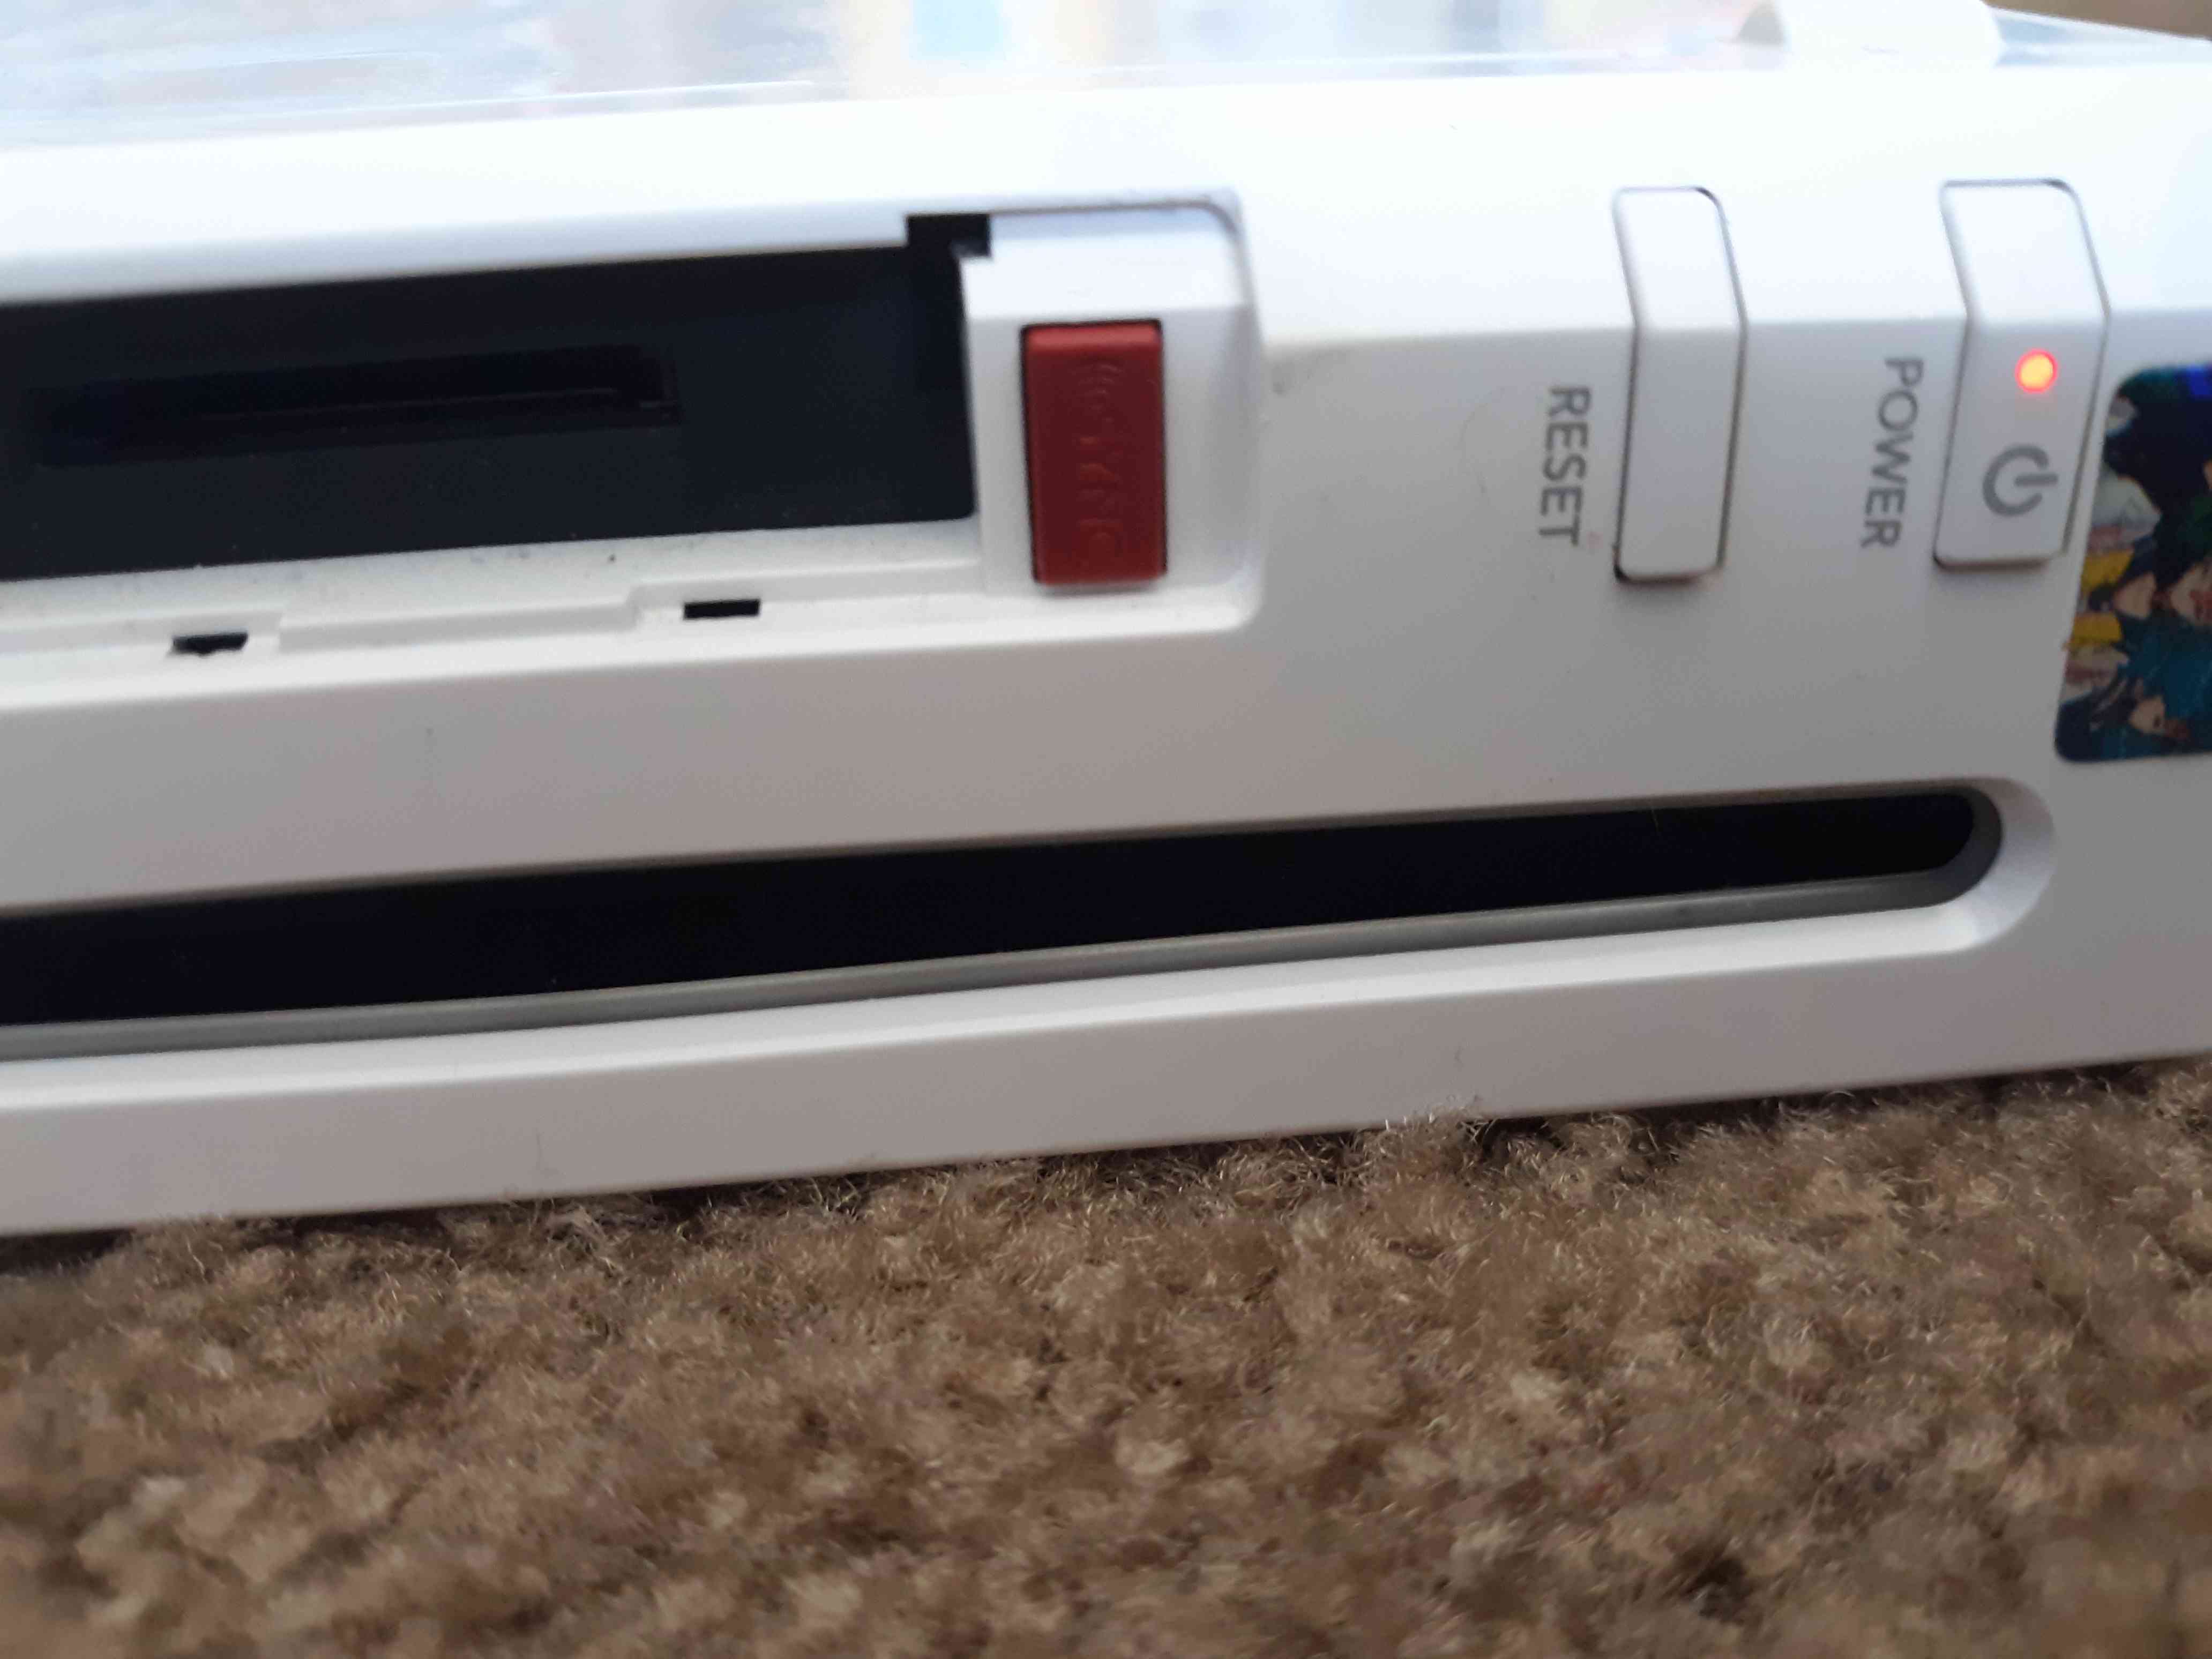 Den röda synkroniseringsknappen finns under minneskortsfackets lock på Wii-konsolens framsida.